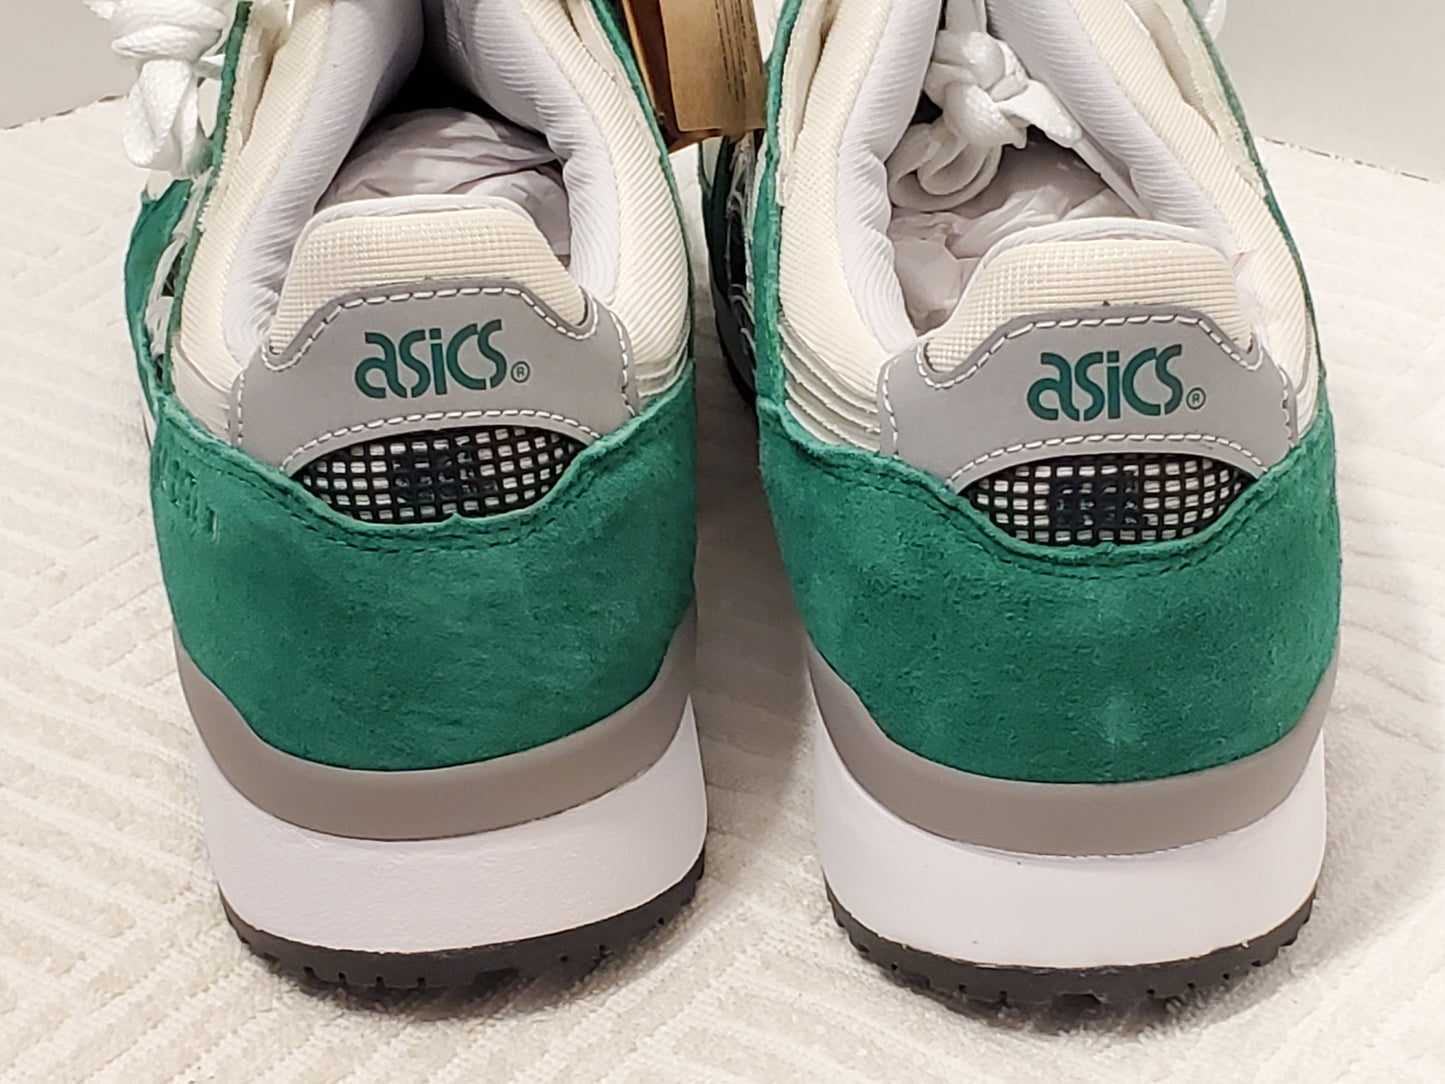 Asics Men's Gel Lyte lll OG AWAKE Sneakers Green Gray Silver White Black Cream